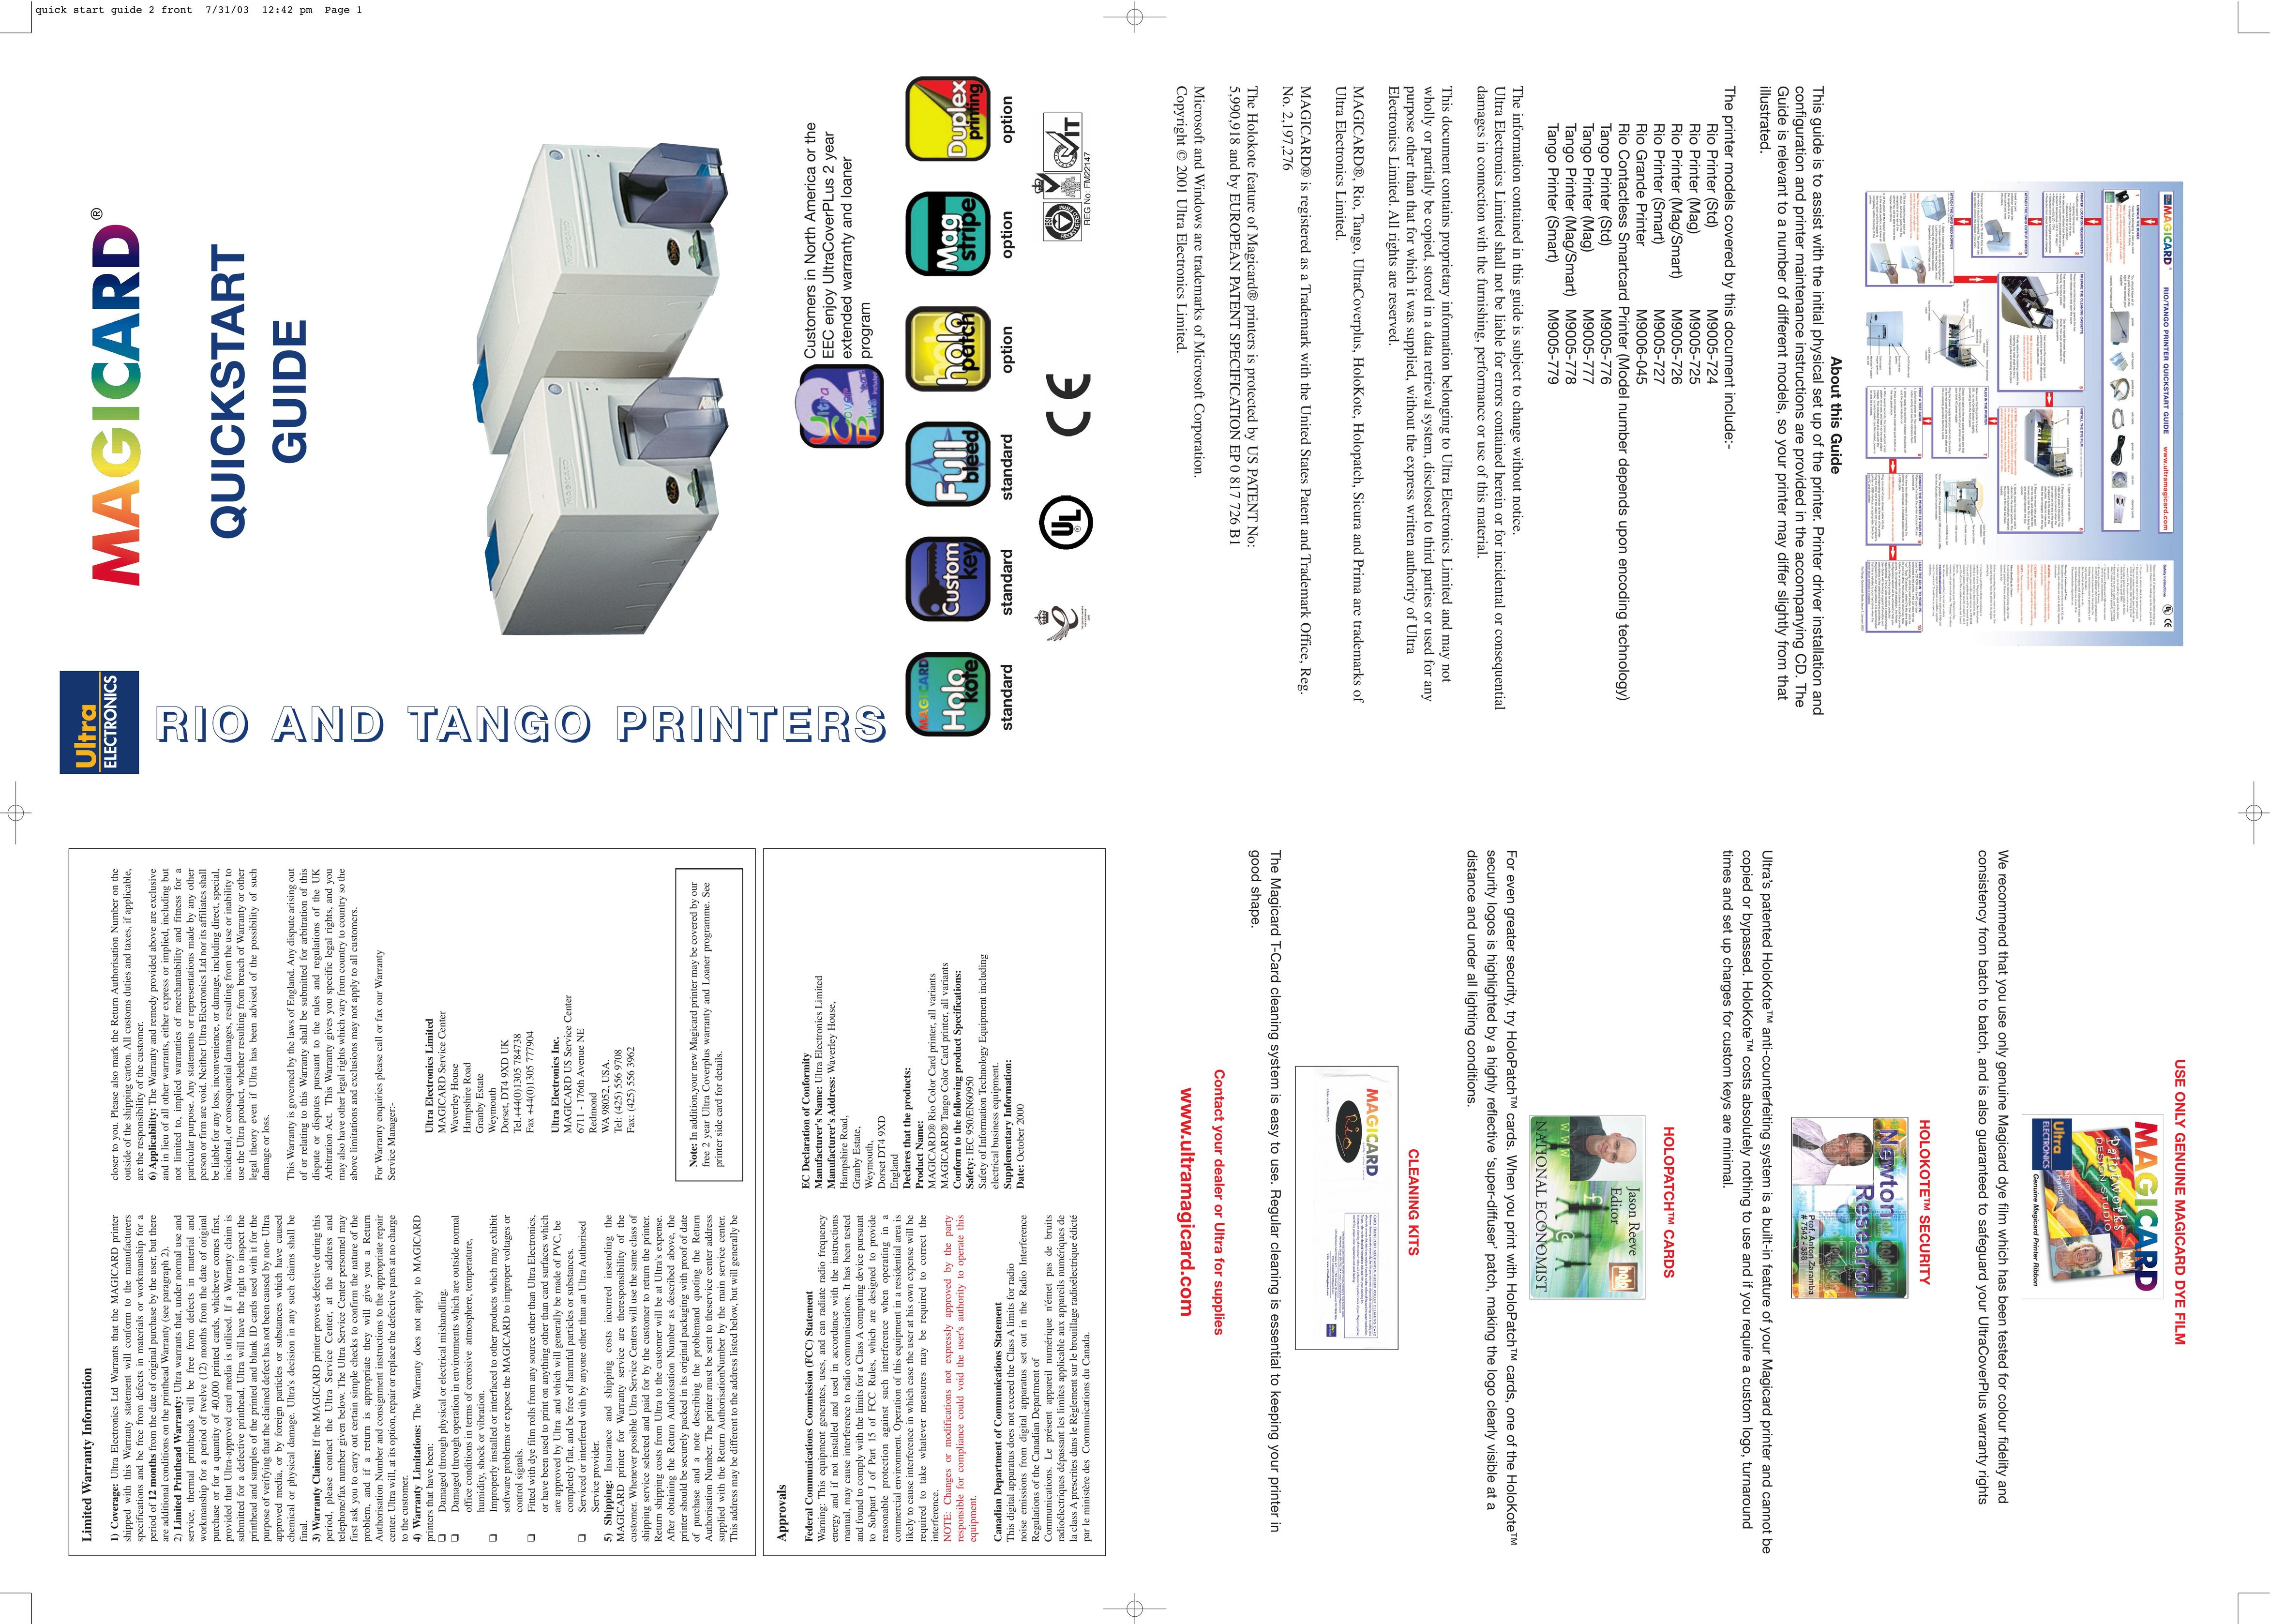 Ultra electronic M9005-776 Printer User Manual